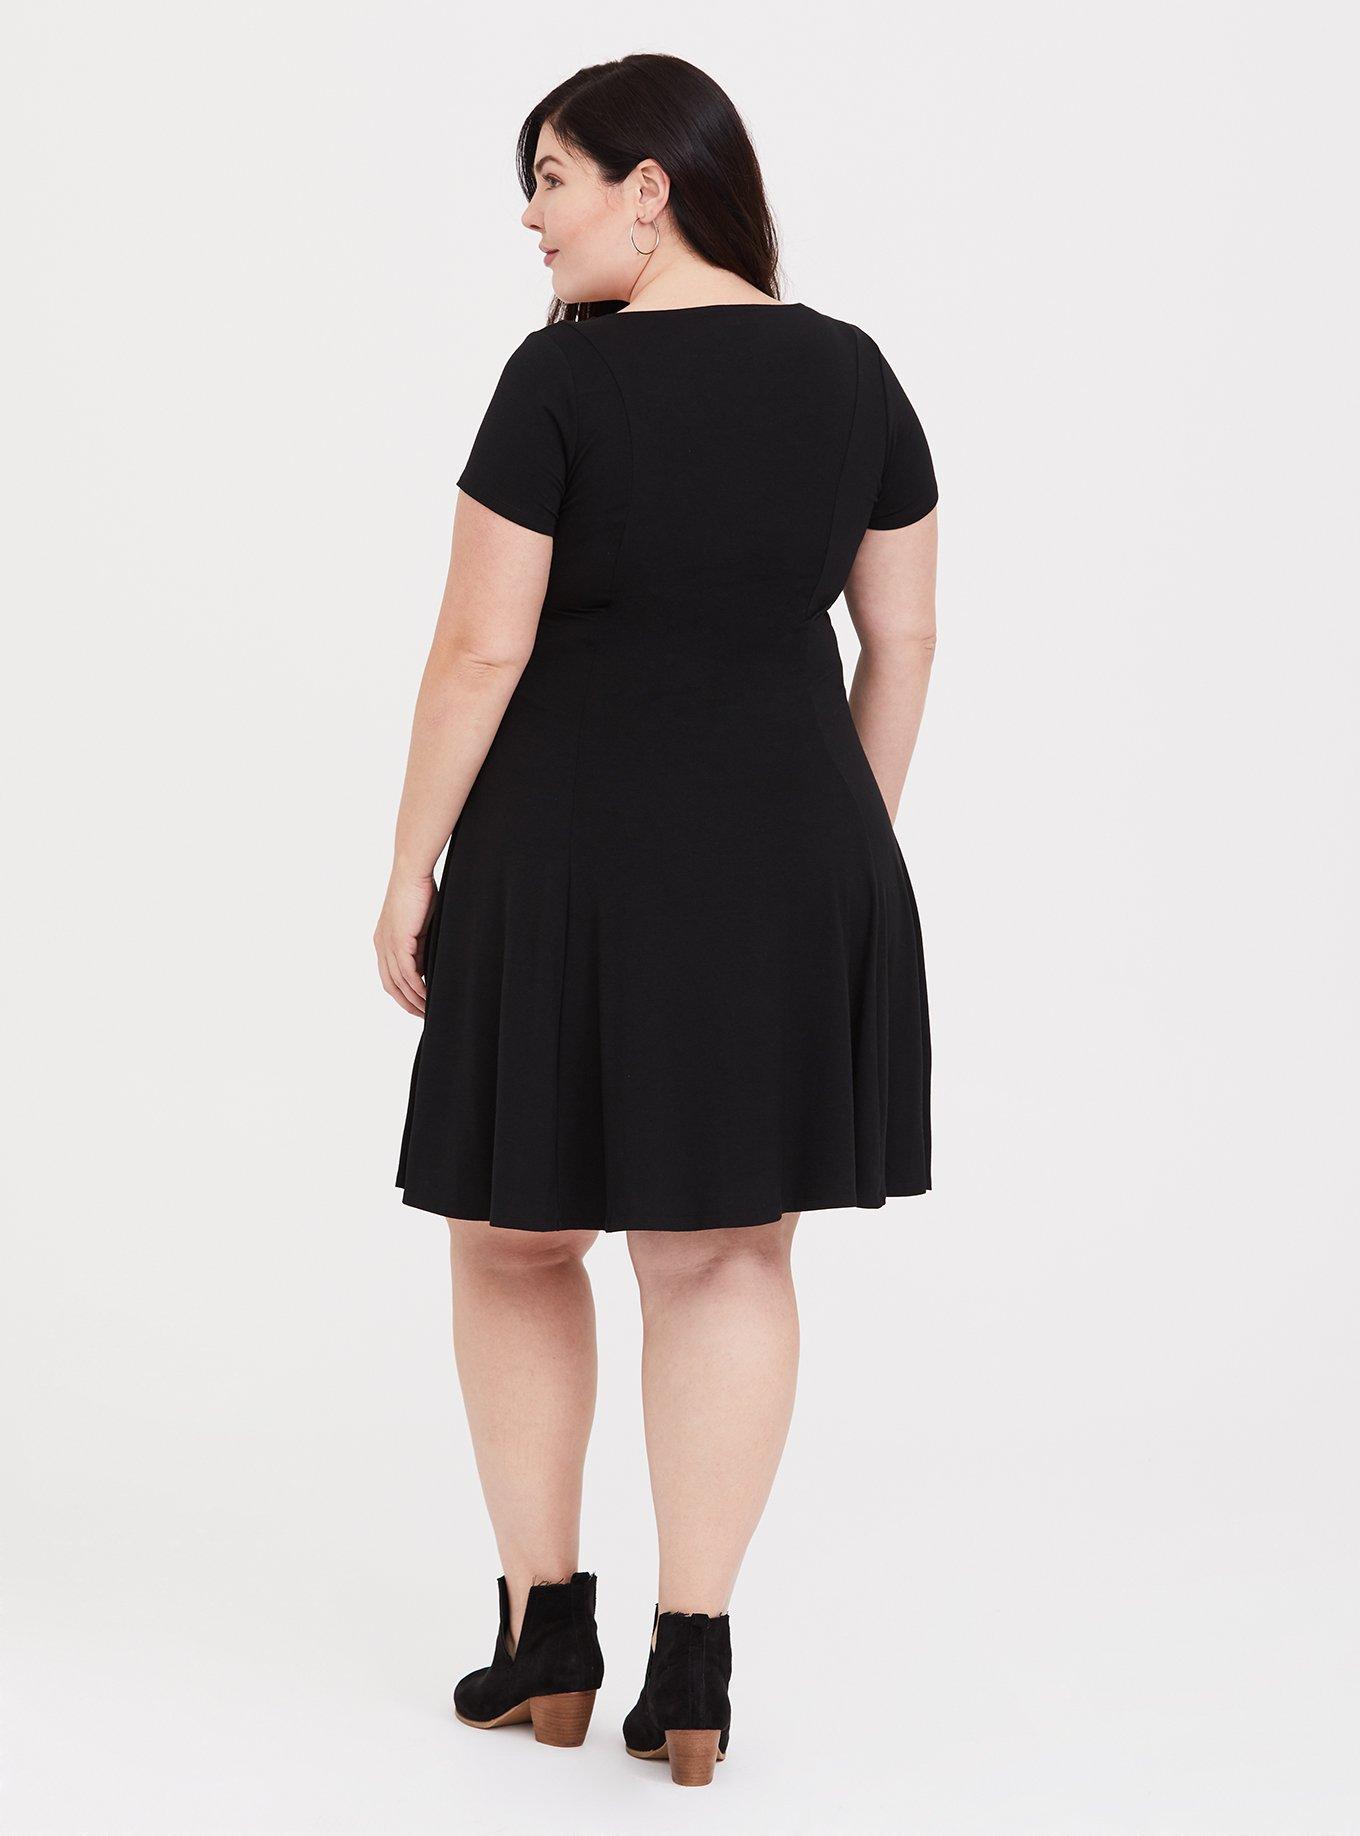 Plus Size - Black Jersey Fluted Skater Dress - Torrid